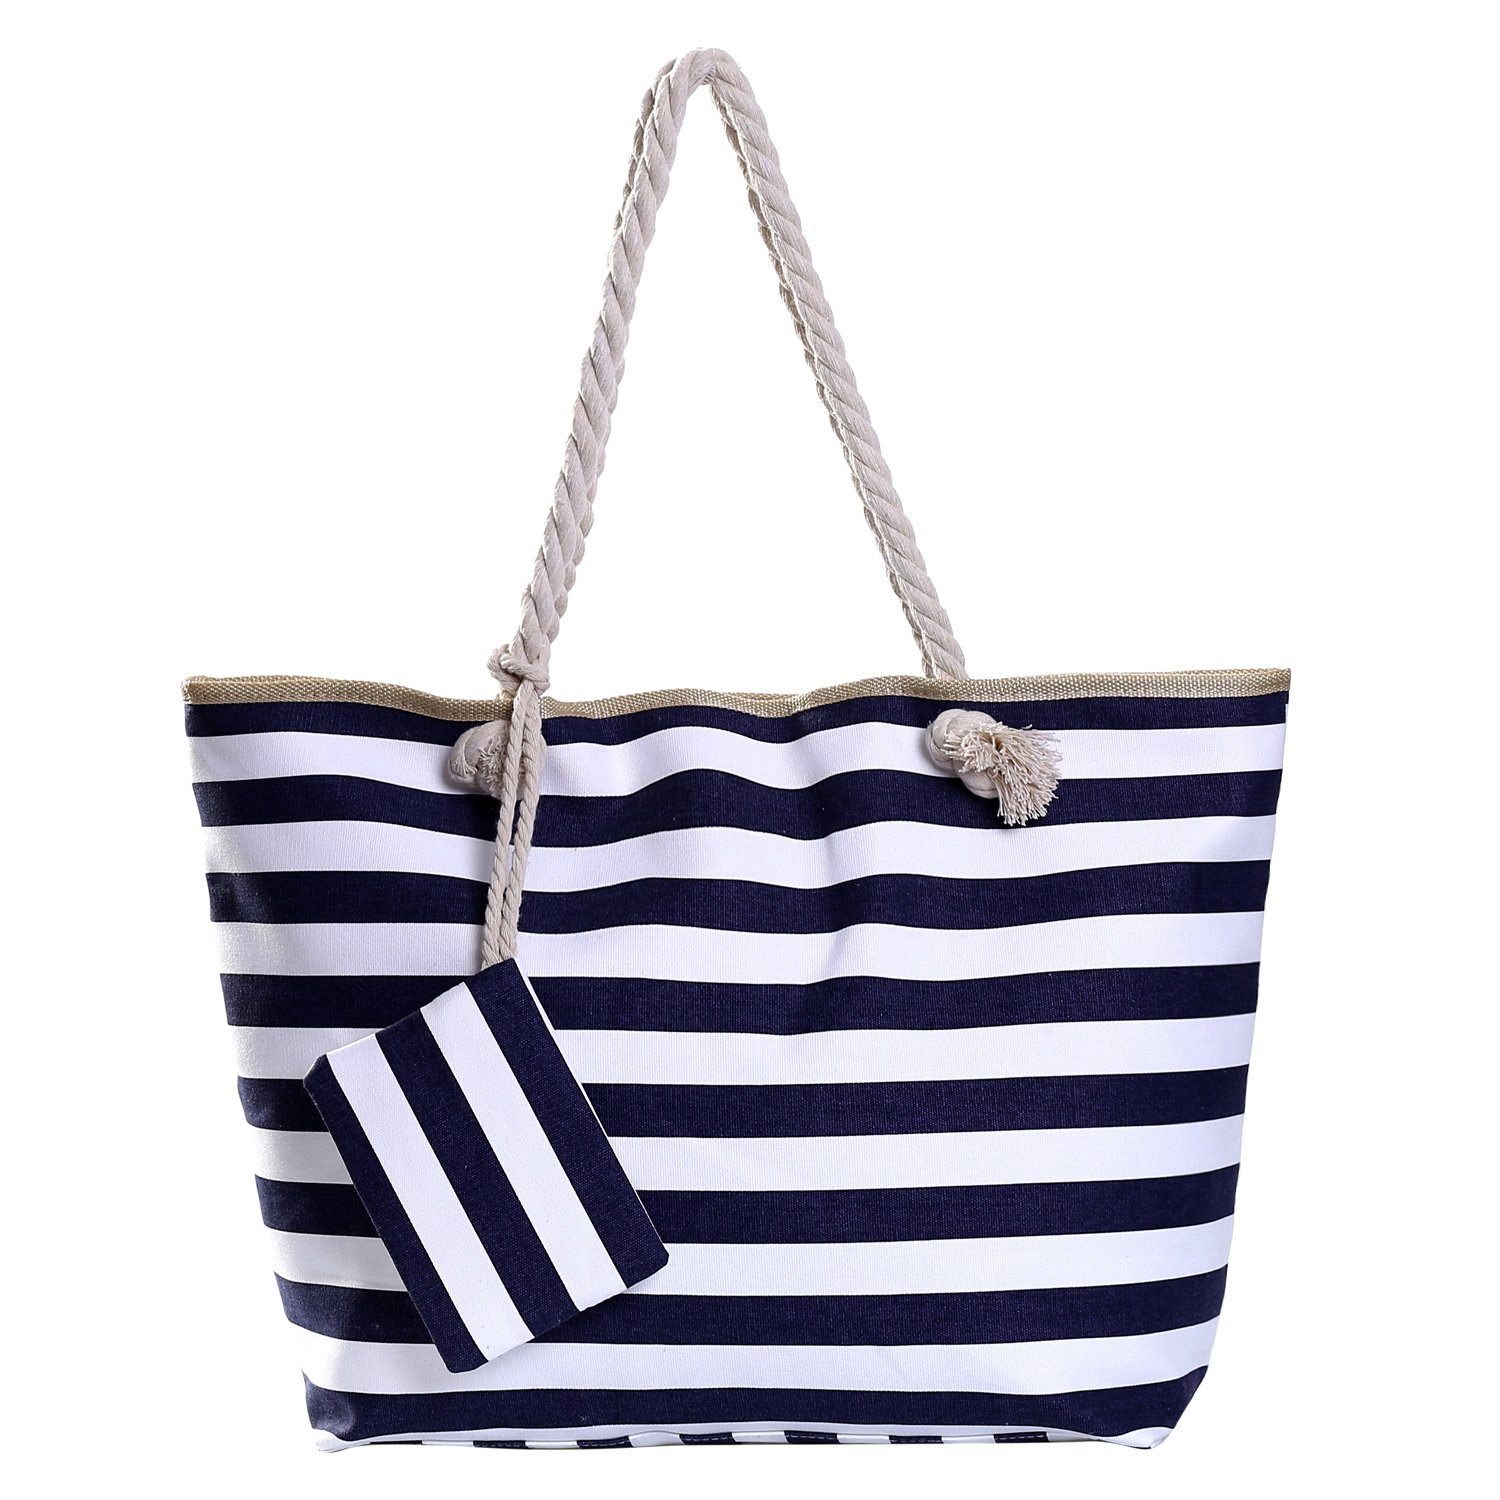 Beutel wasserabweisende inkl. gestreift Tasche 1 dunkelblau-weiß Reißverschluss, Shopper DonDon (2-tlg), mit Strandtasche kleinem Strandtasche, Große